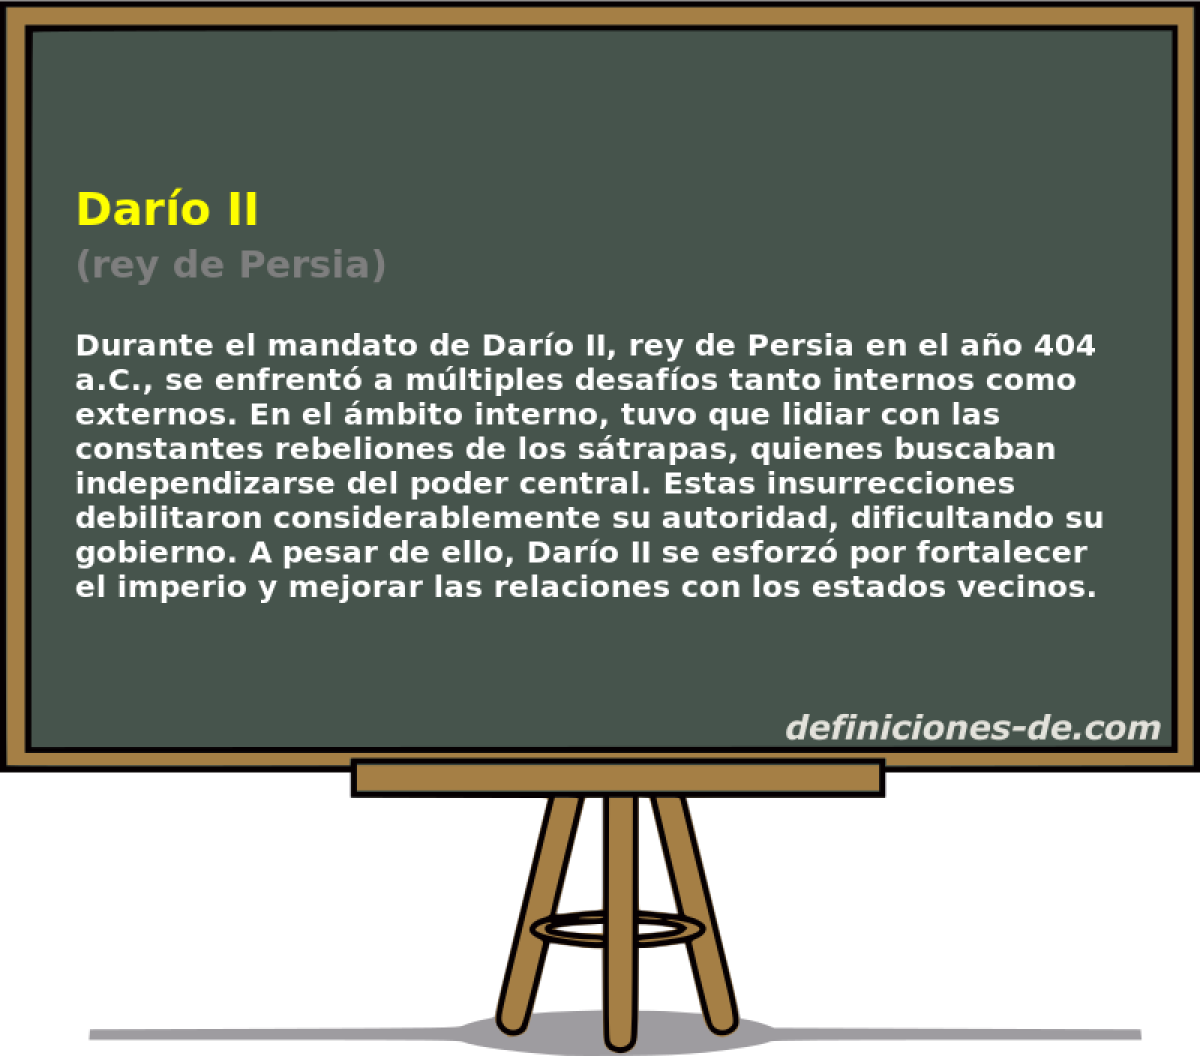 Daro II (rey de Persia)